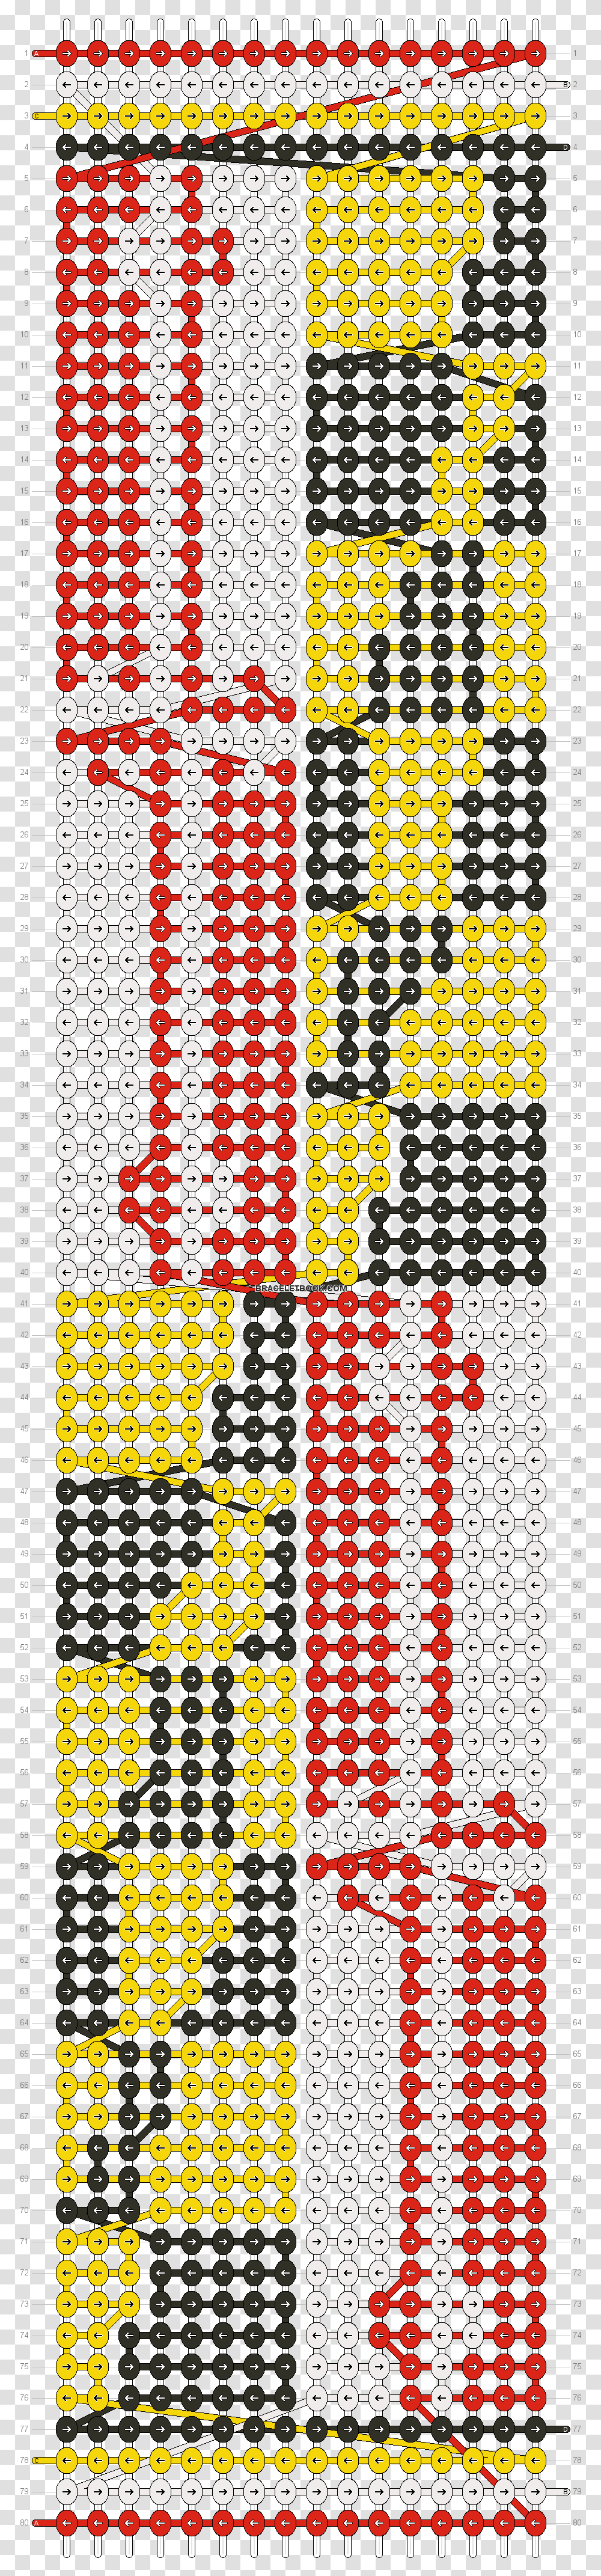 Alpha Pattern Illustration, Alphabet, Pac Man, Number Transparent Png